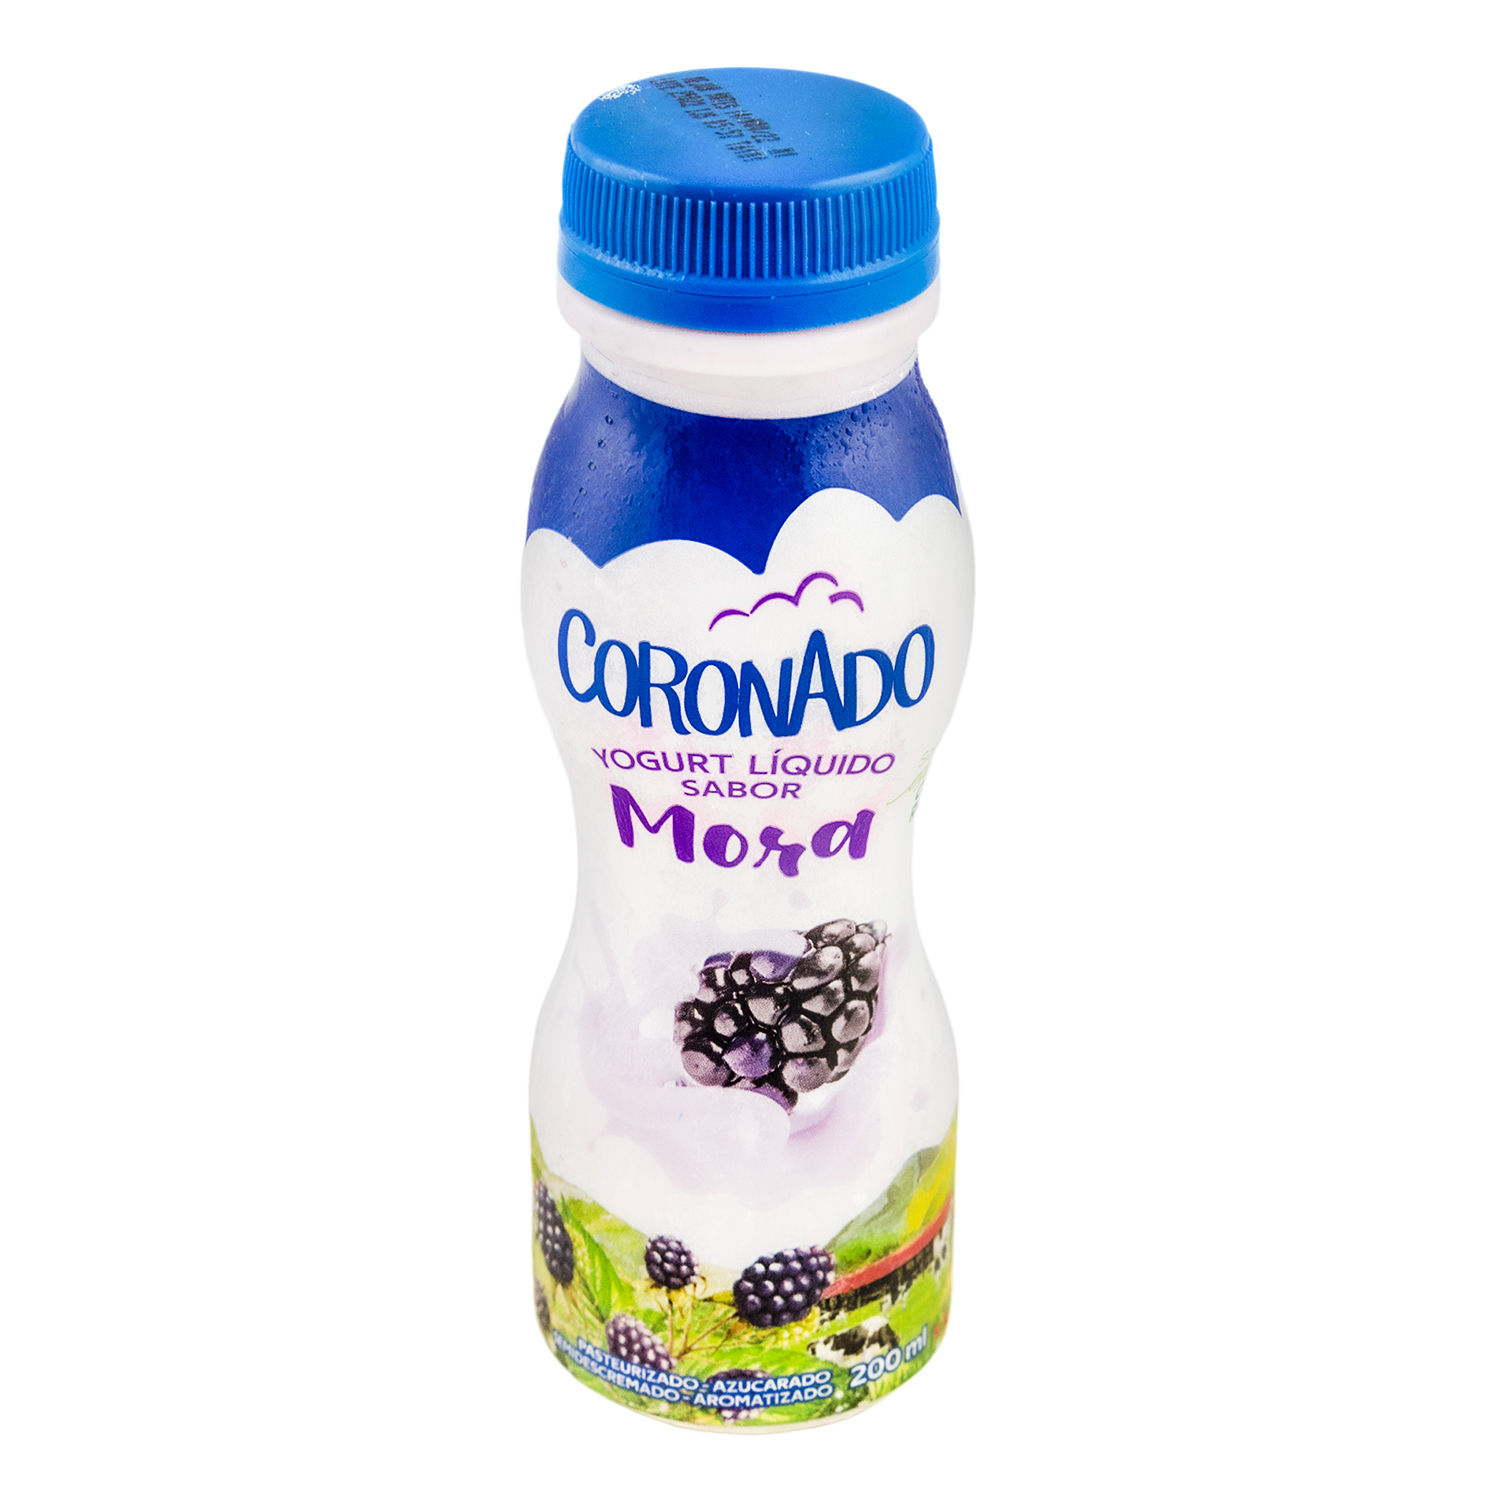 Yogurt Liquido Mora Coronado Envase 200 G